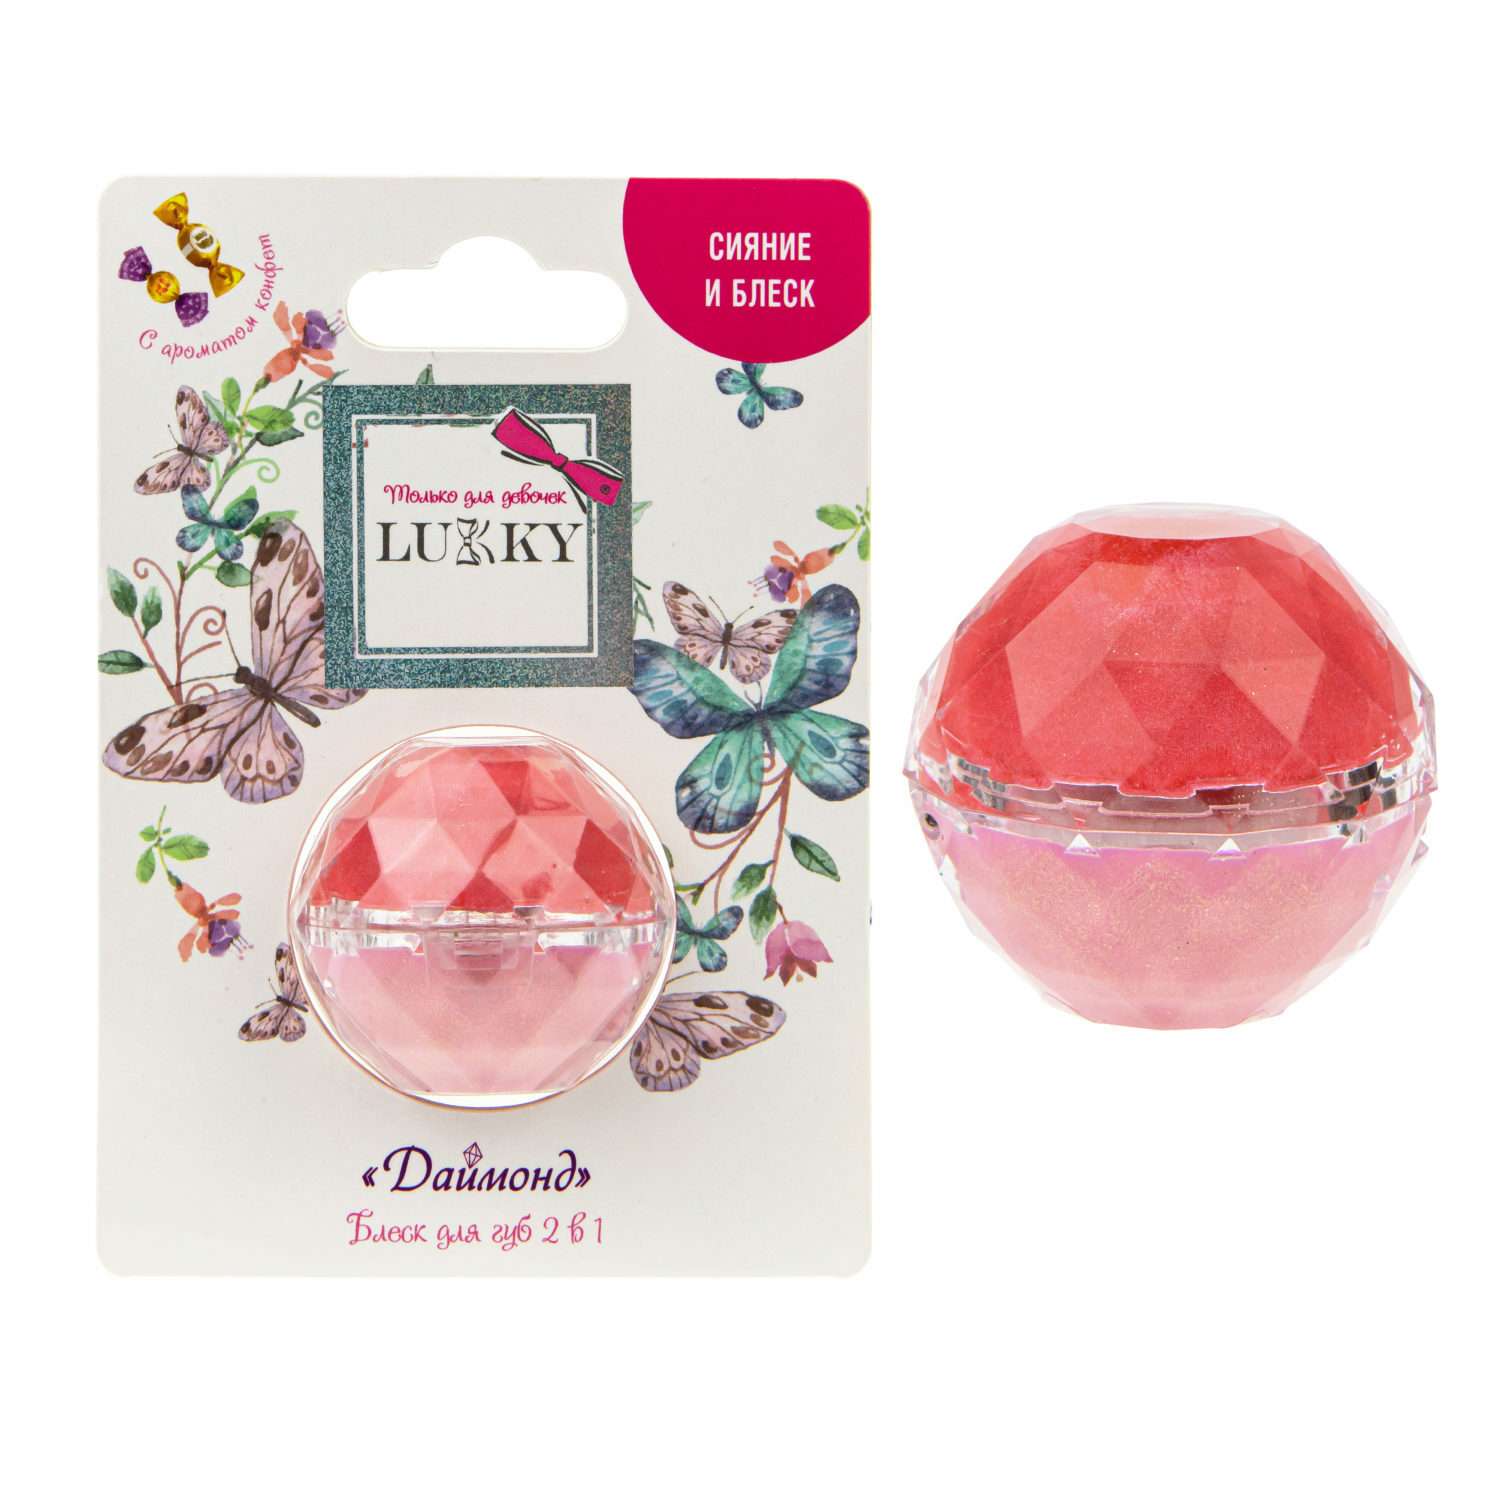 Блеск для губ Lukky Даймонд 2 в 1 цвет конфетно-розовый и бледно-розовый - фото 4